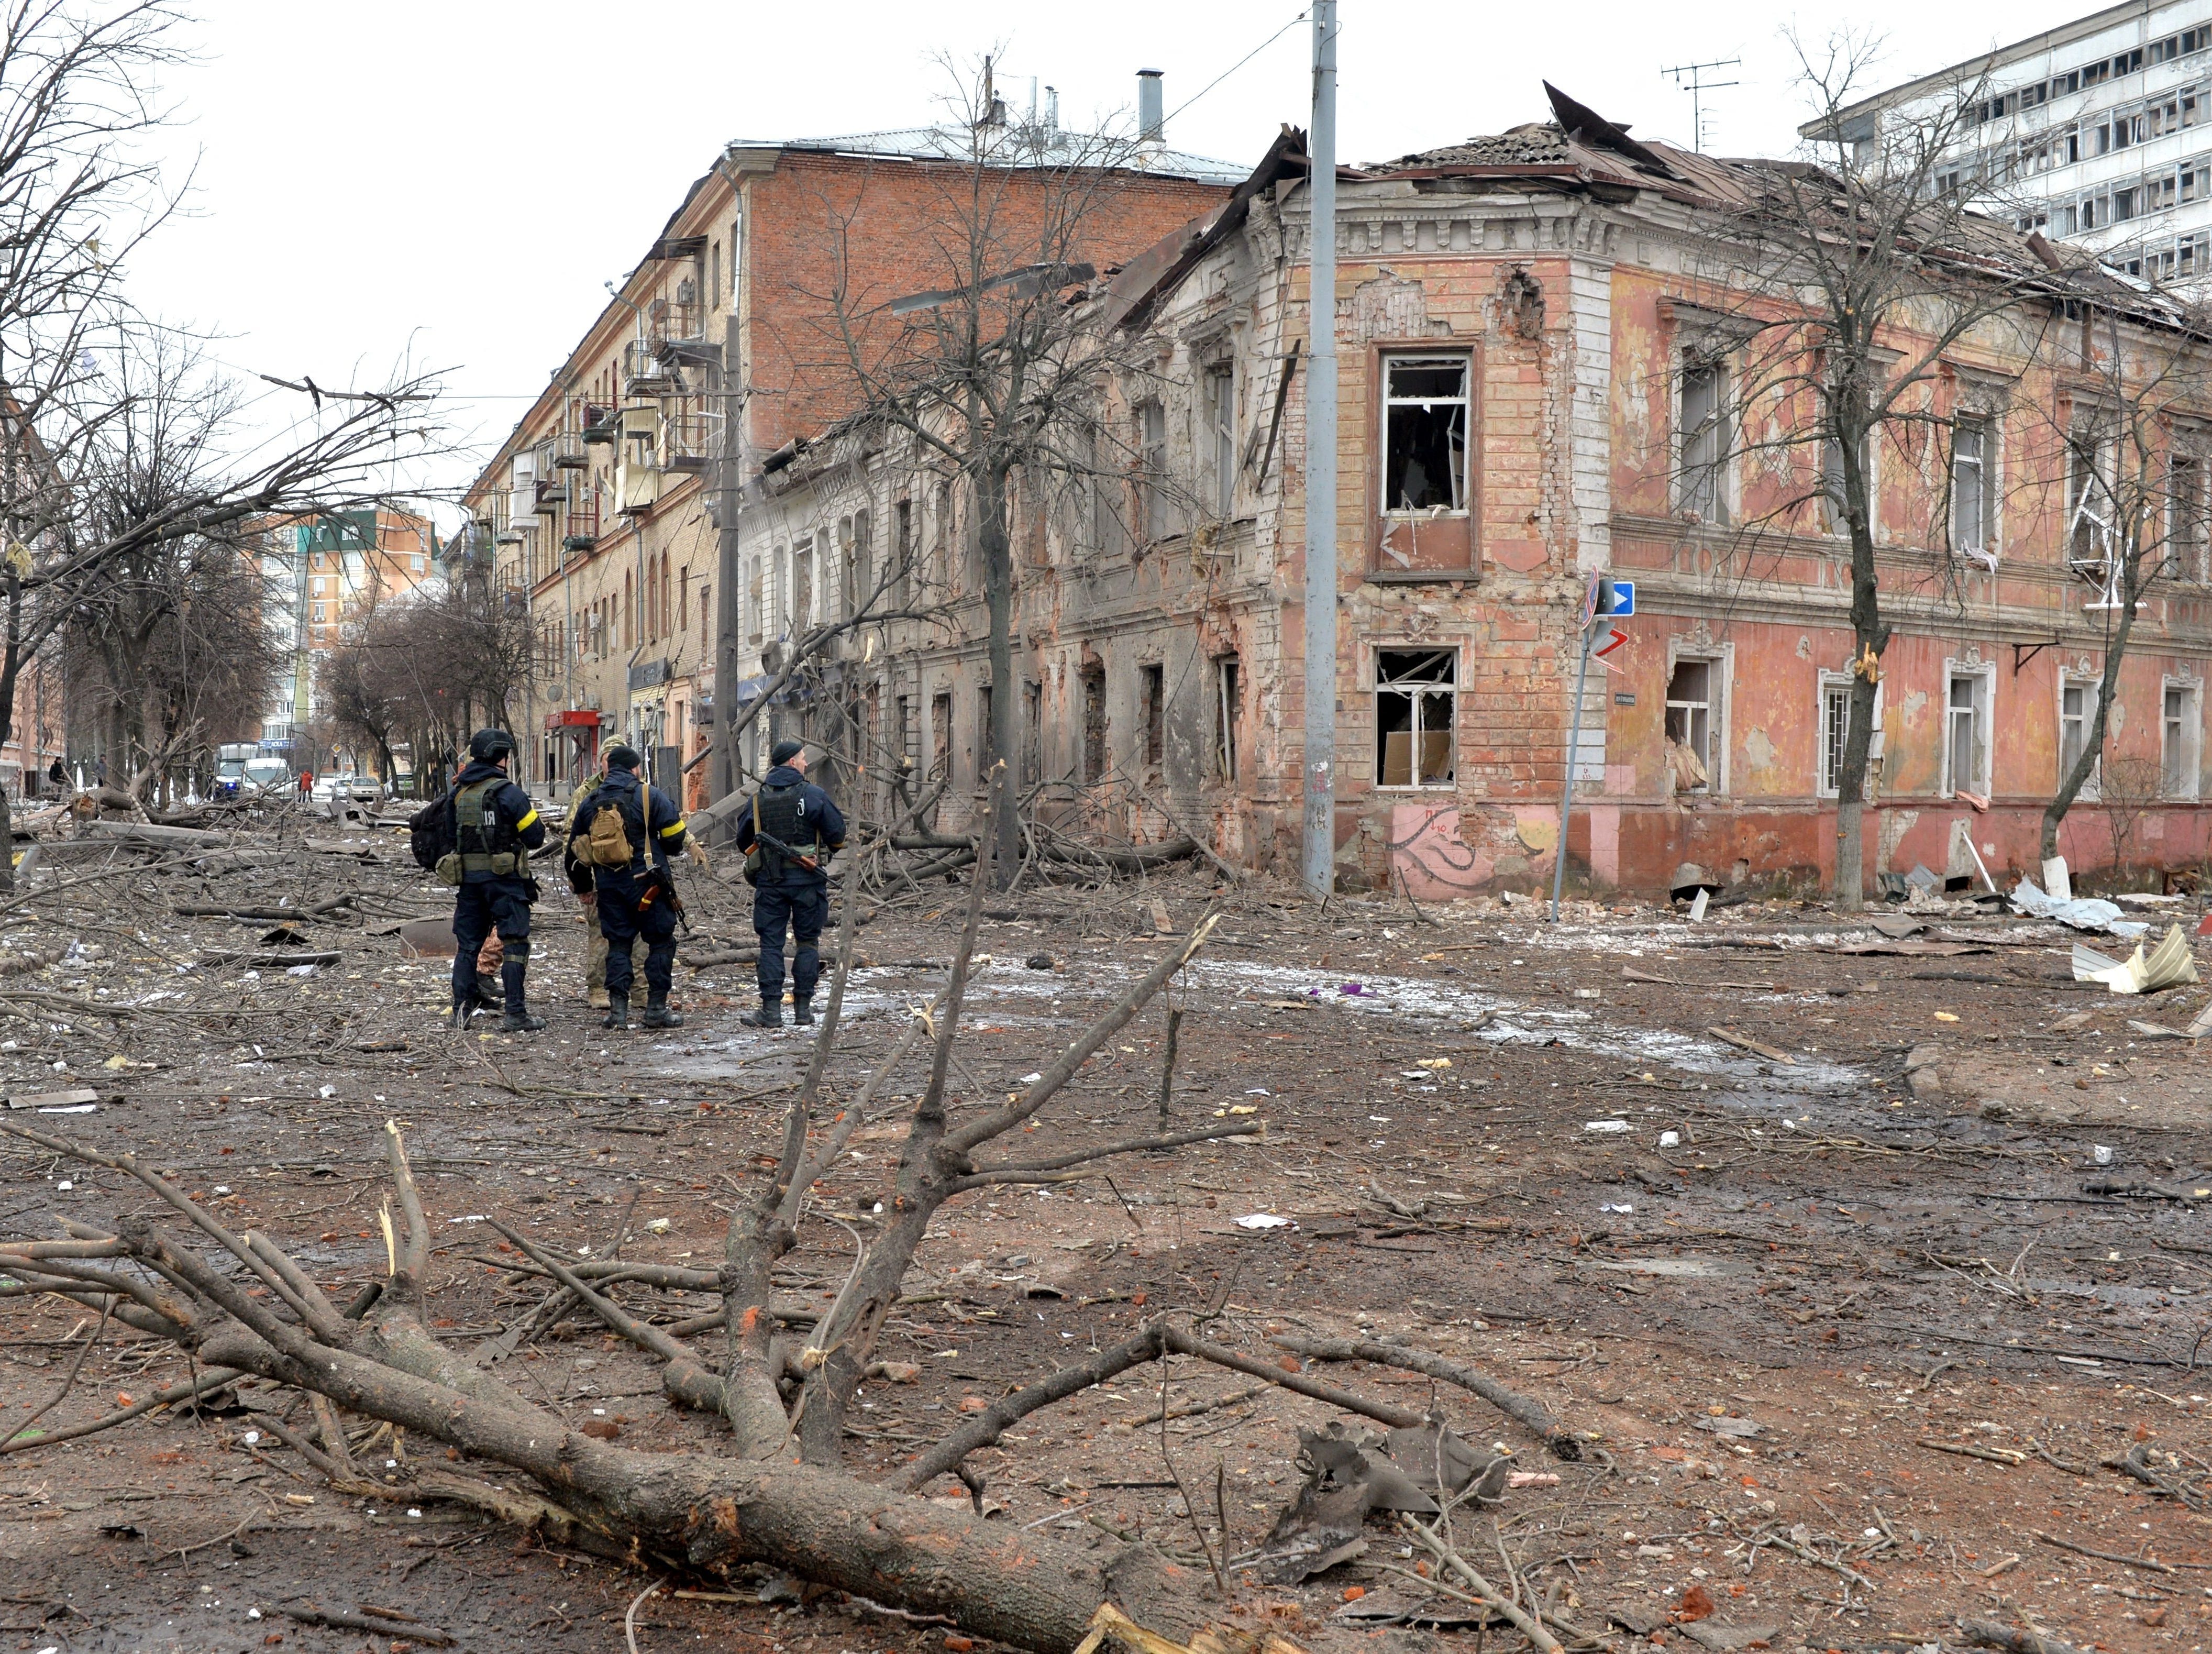 Ukrainische Polizisten patrouillieren am 7. März 2022 nach einem Beschuss in Charkiw, der zweitgrößten Stadt der Ukraine, auf einer Straße.